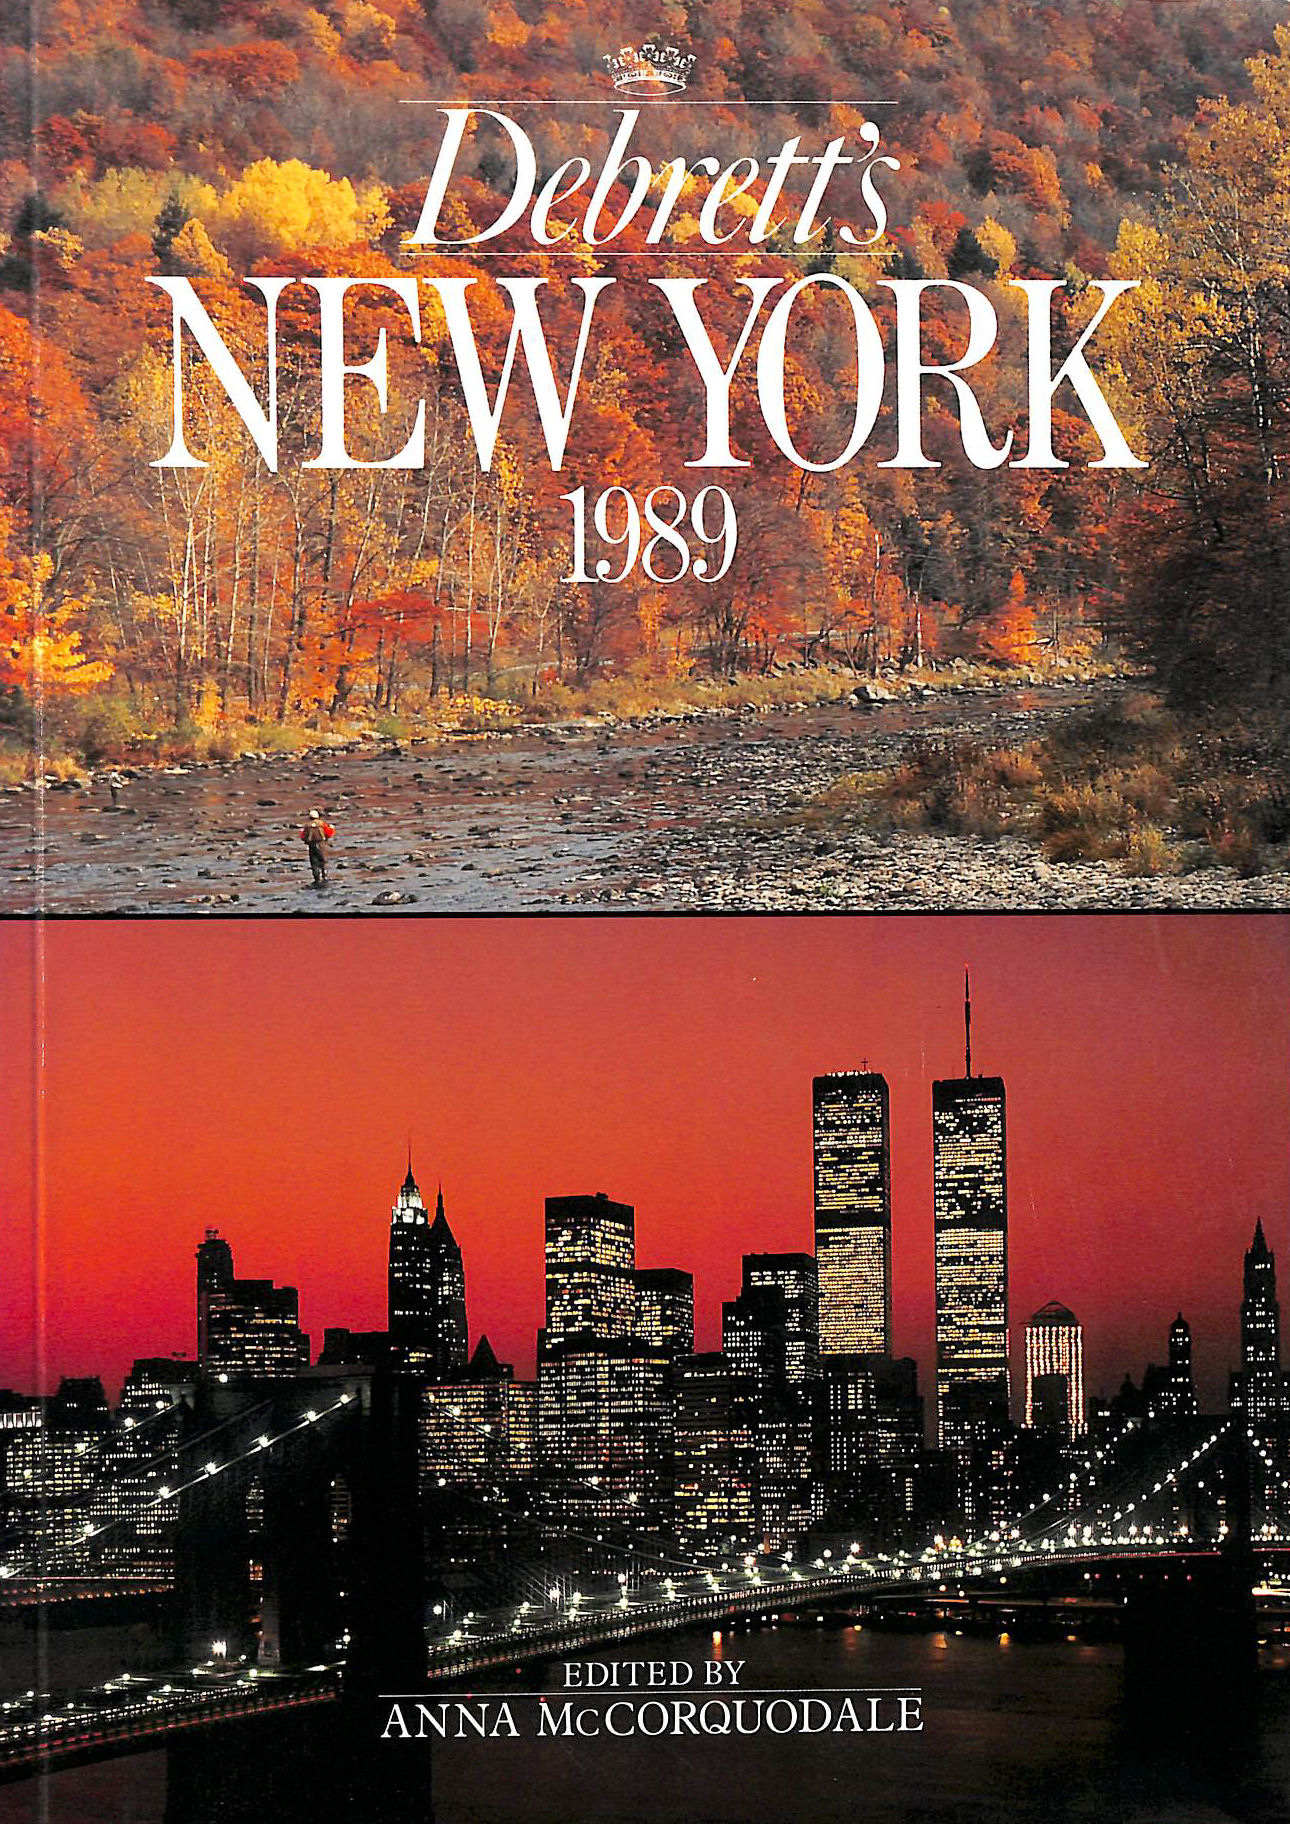 ANNA MCCORQUODALE [EDITOR] - Debrett's New York 1989